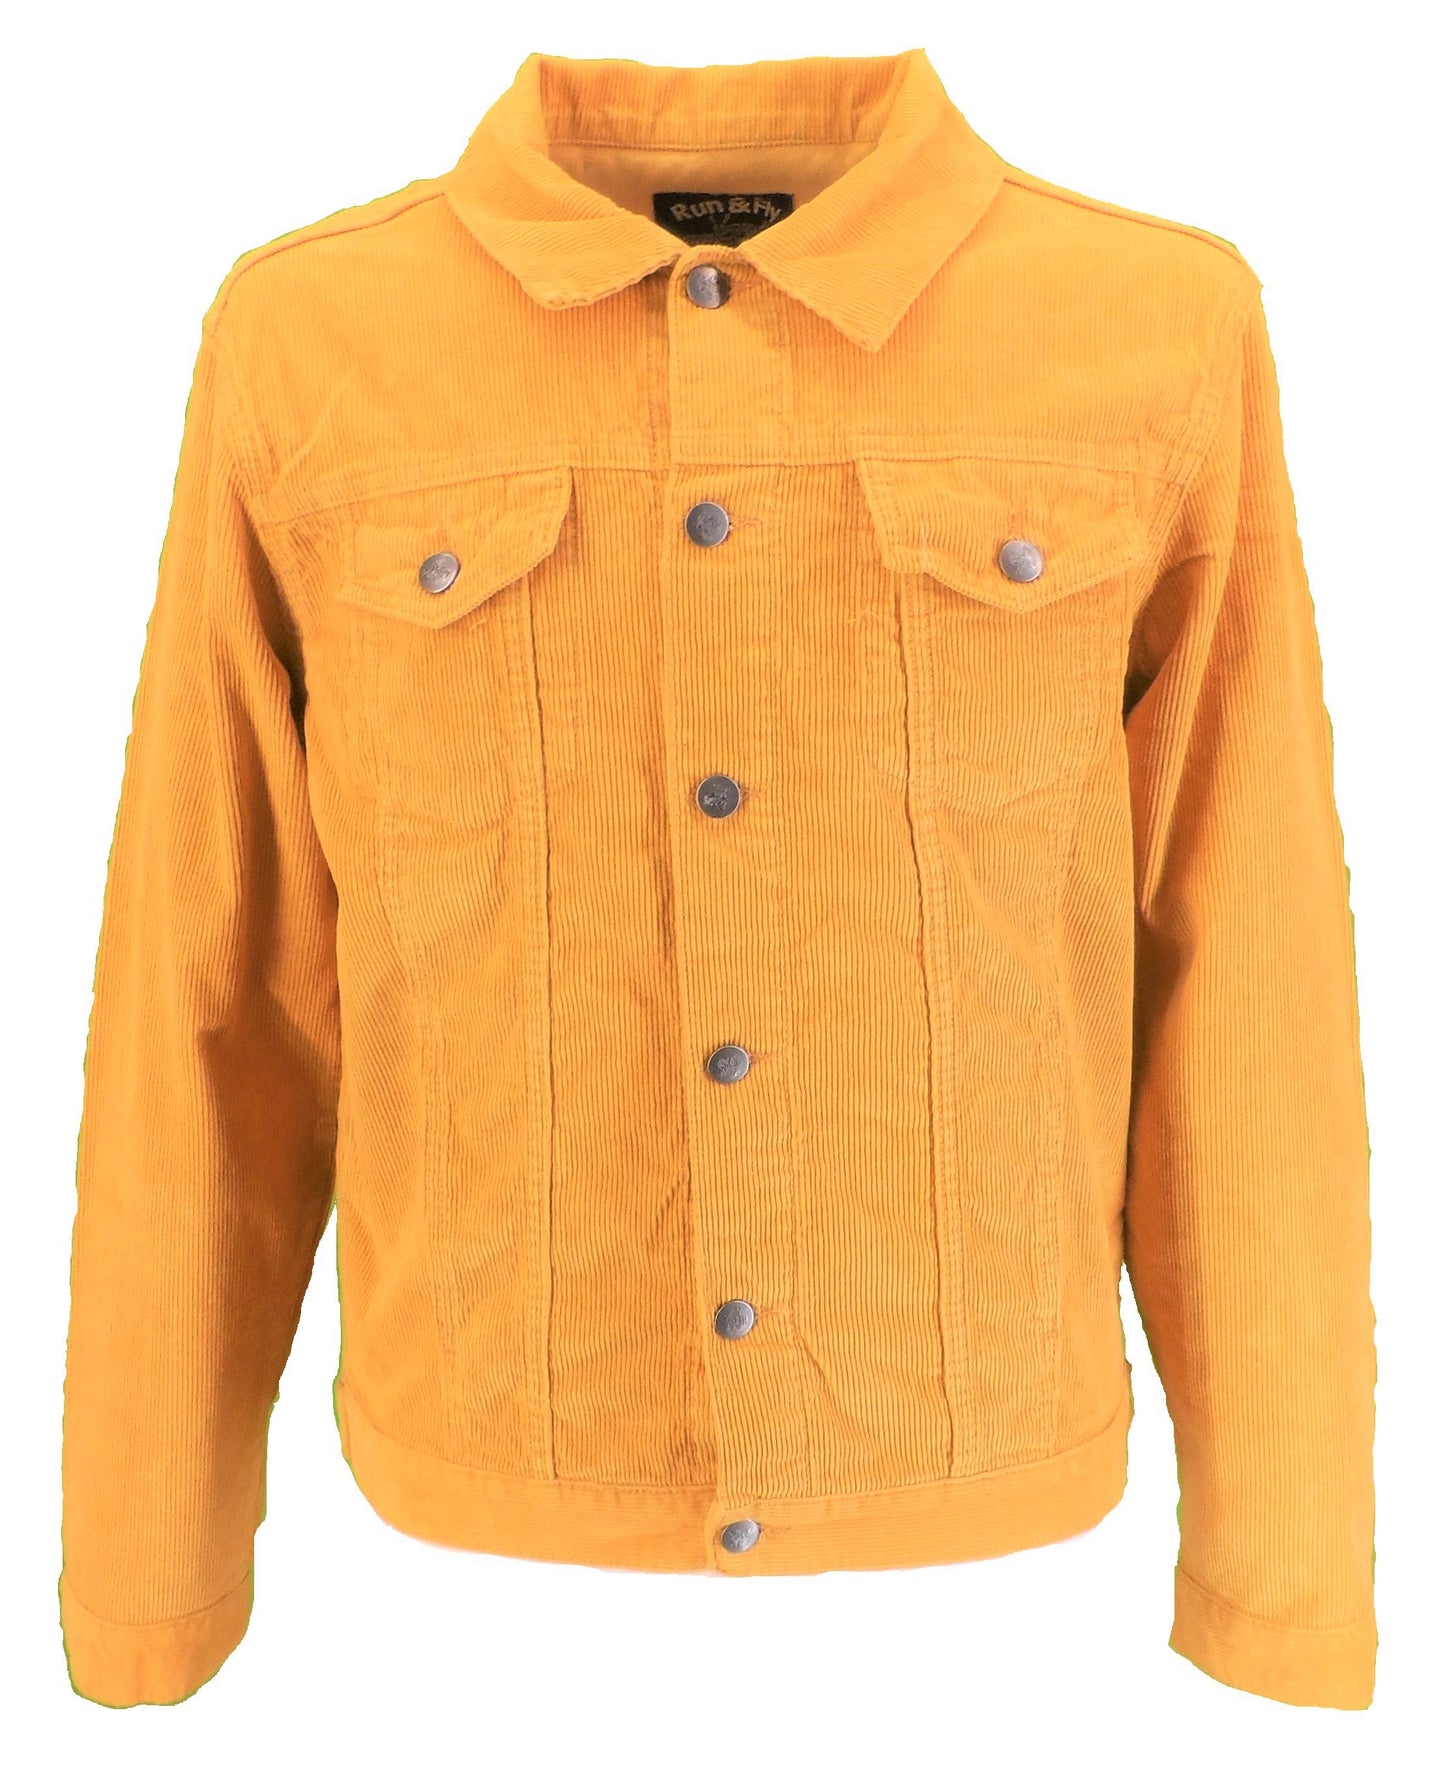 Run & Fly veste de camionneur western rétro vintage avec cordon doré des années 60 pour homme